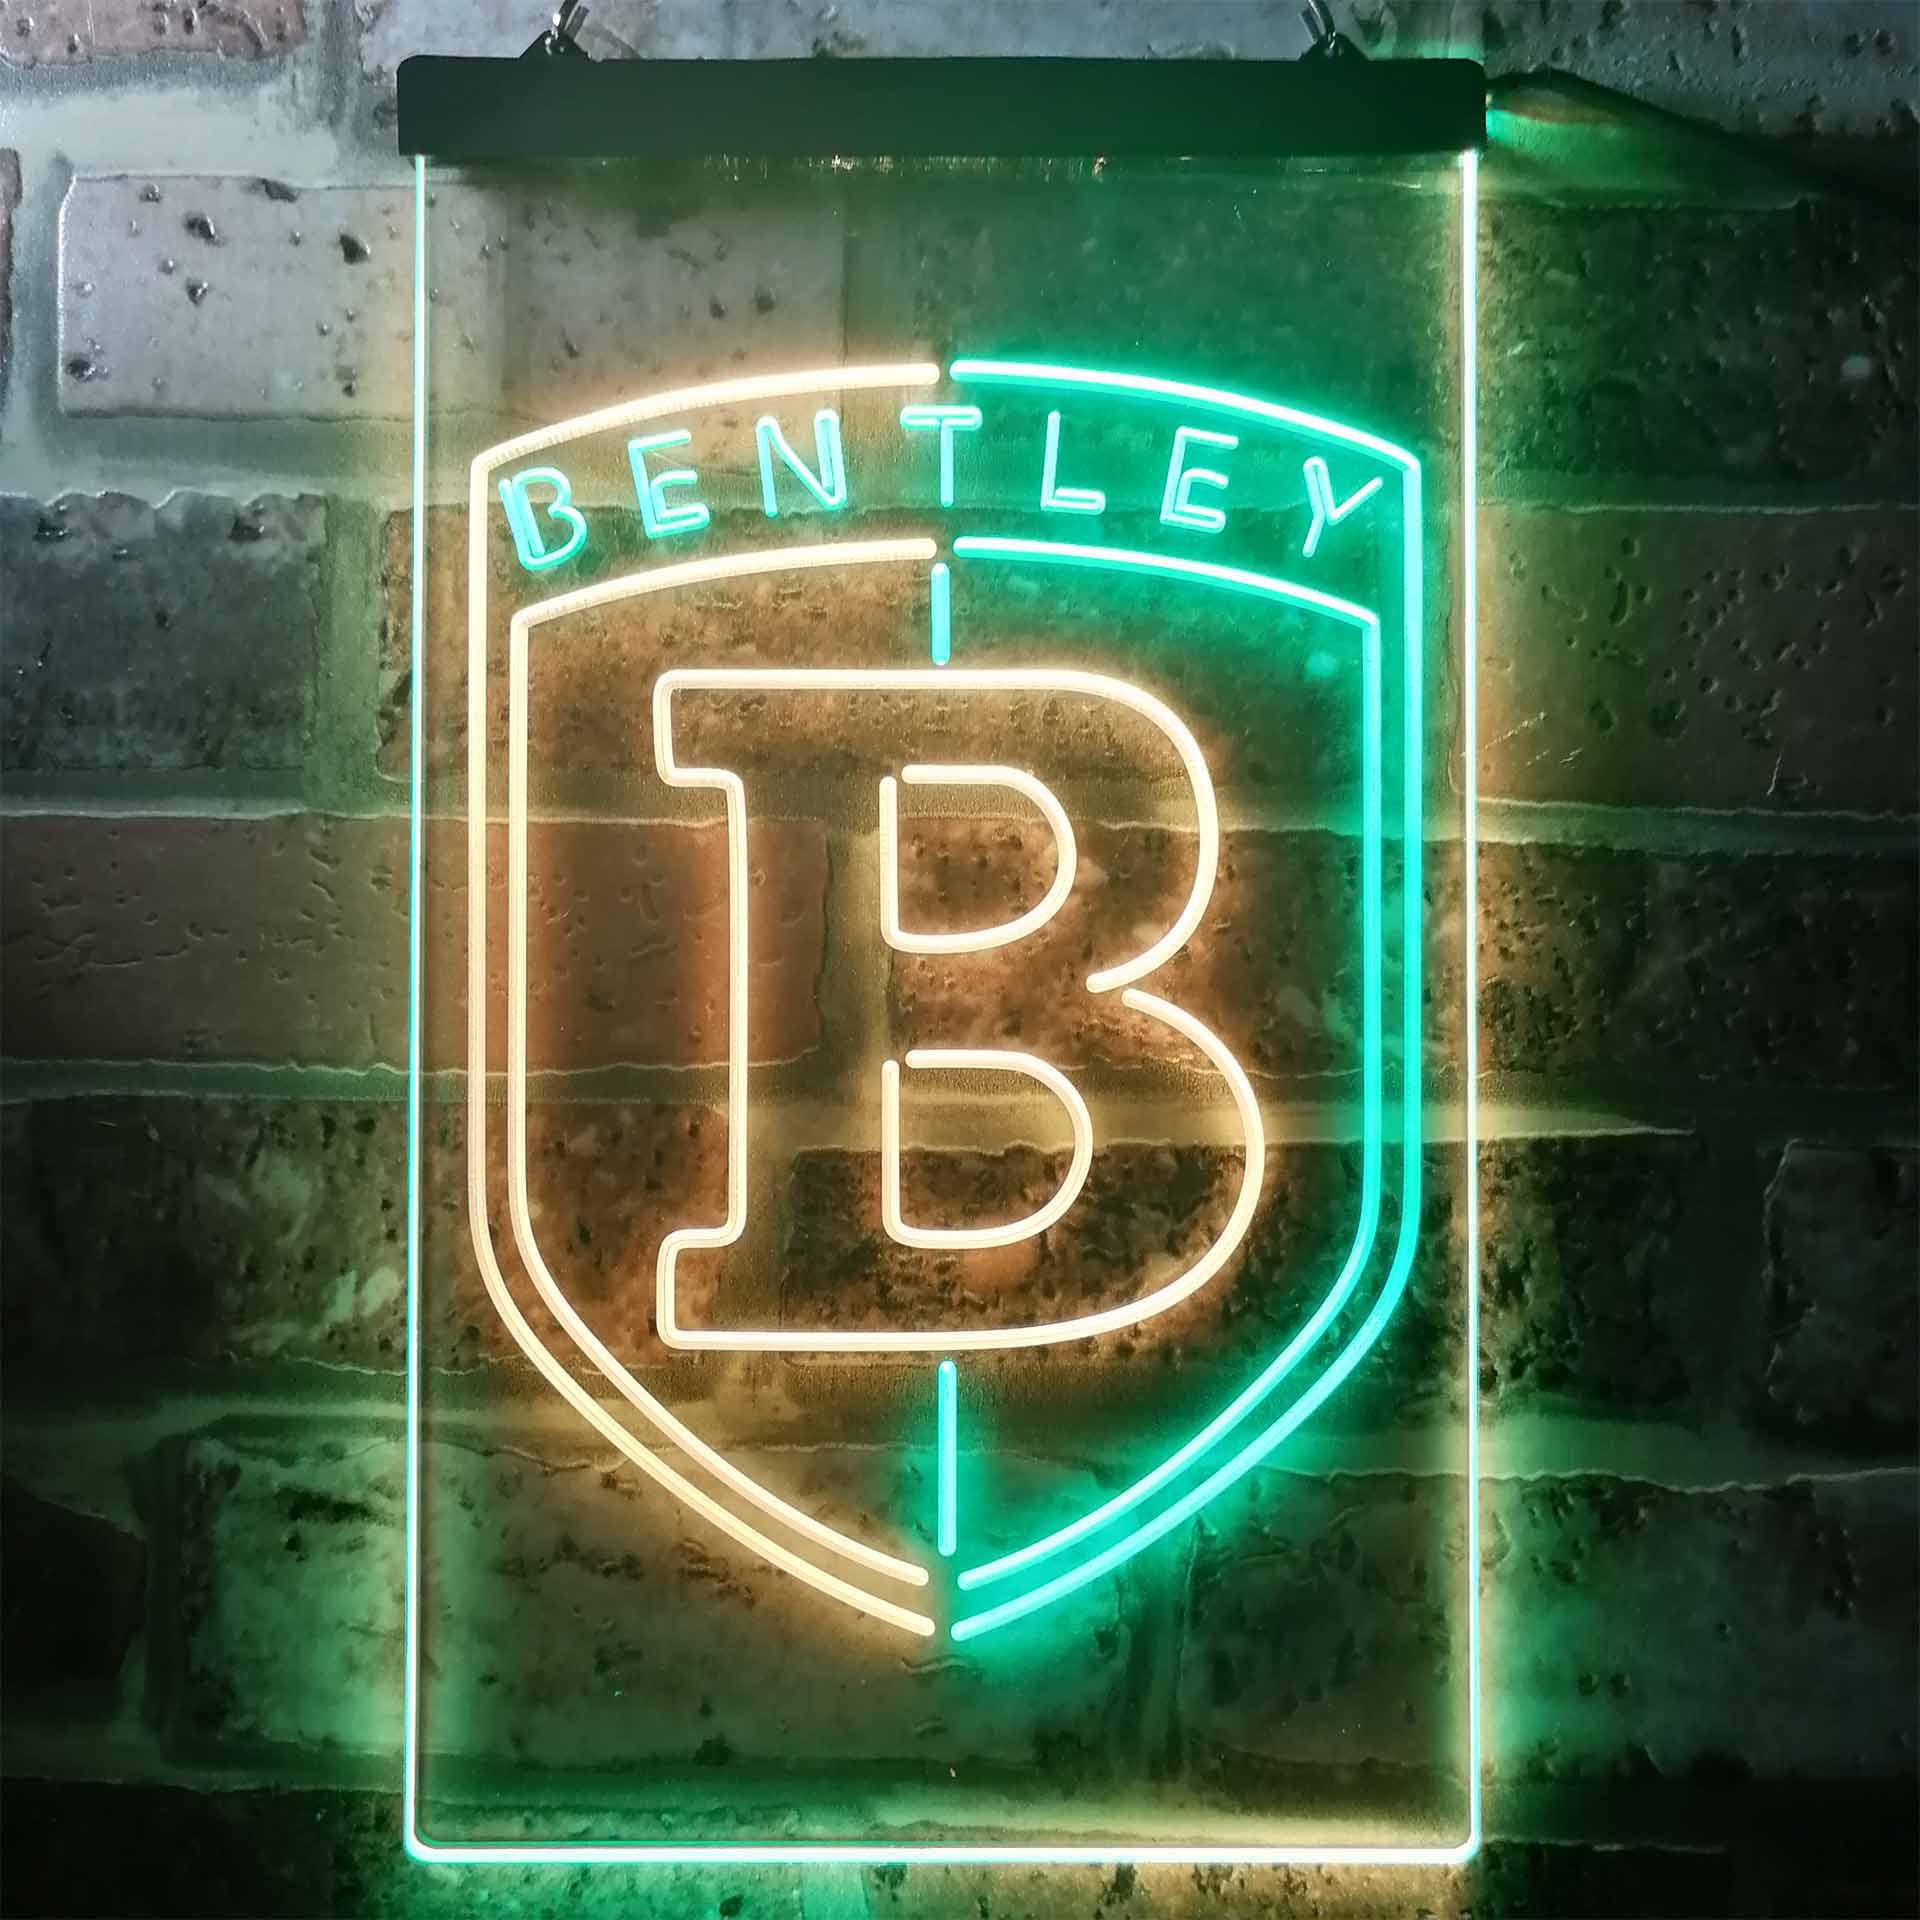 Bentley Neon LED Sign